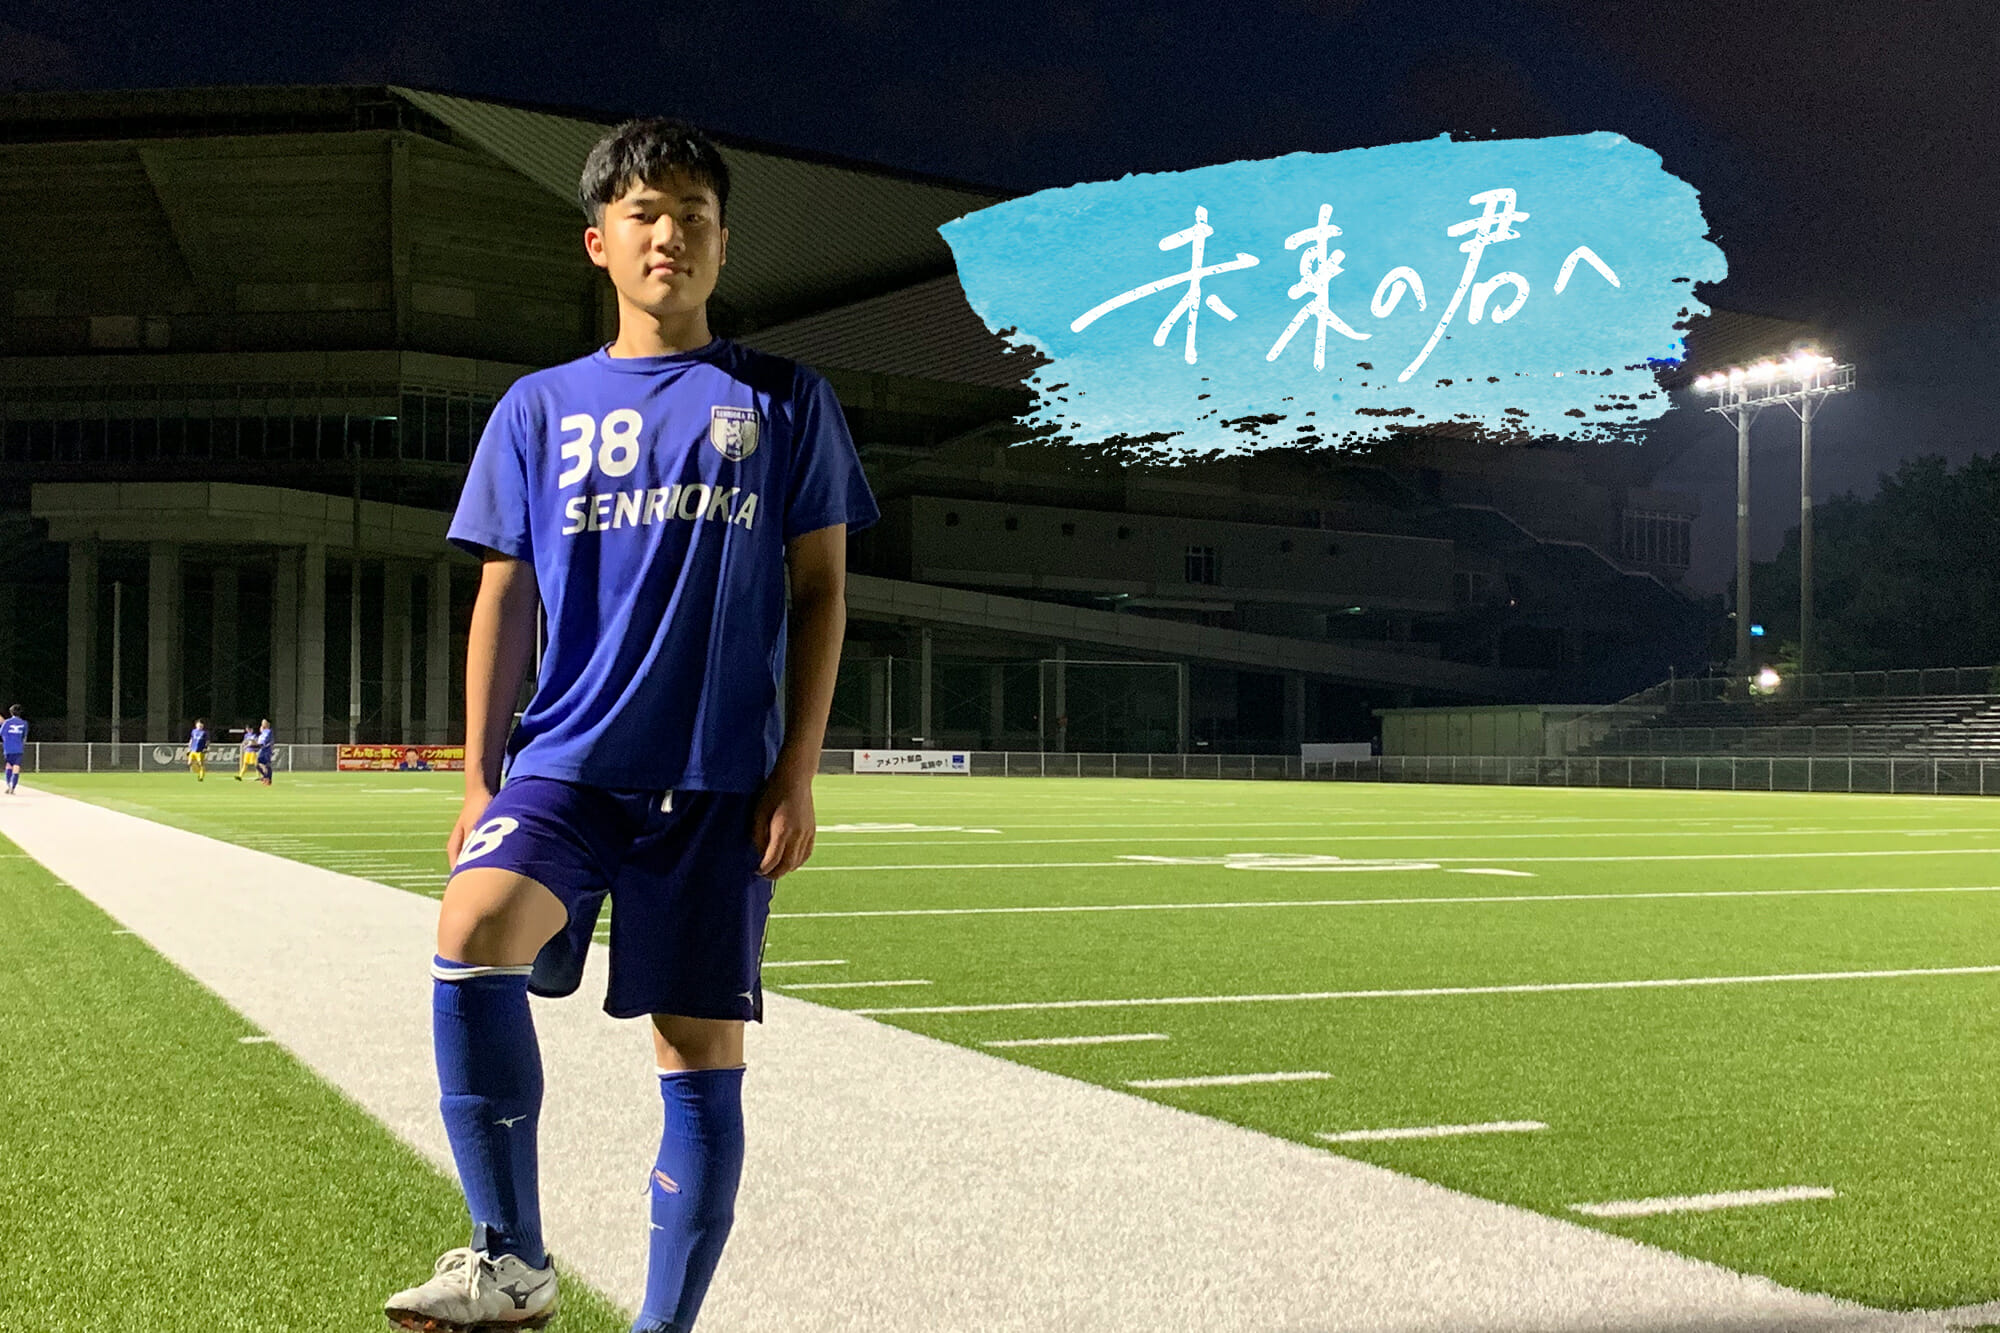 千里丘fc 大阪 鴨川光輝 中学3年生 Reibola 新しいサッカーメディア